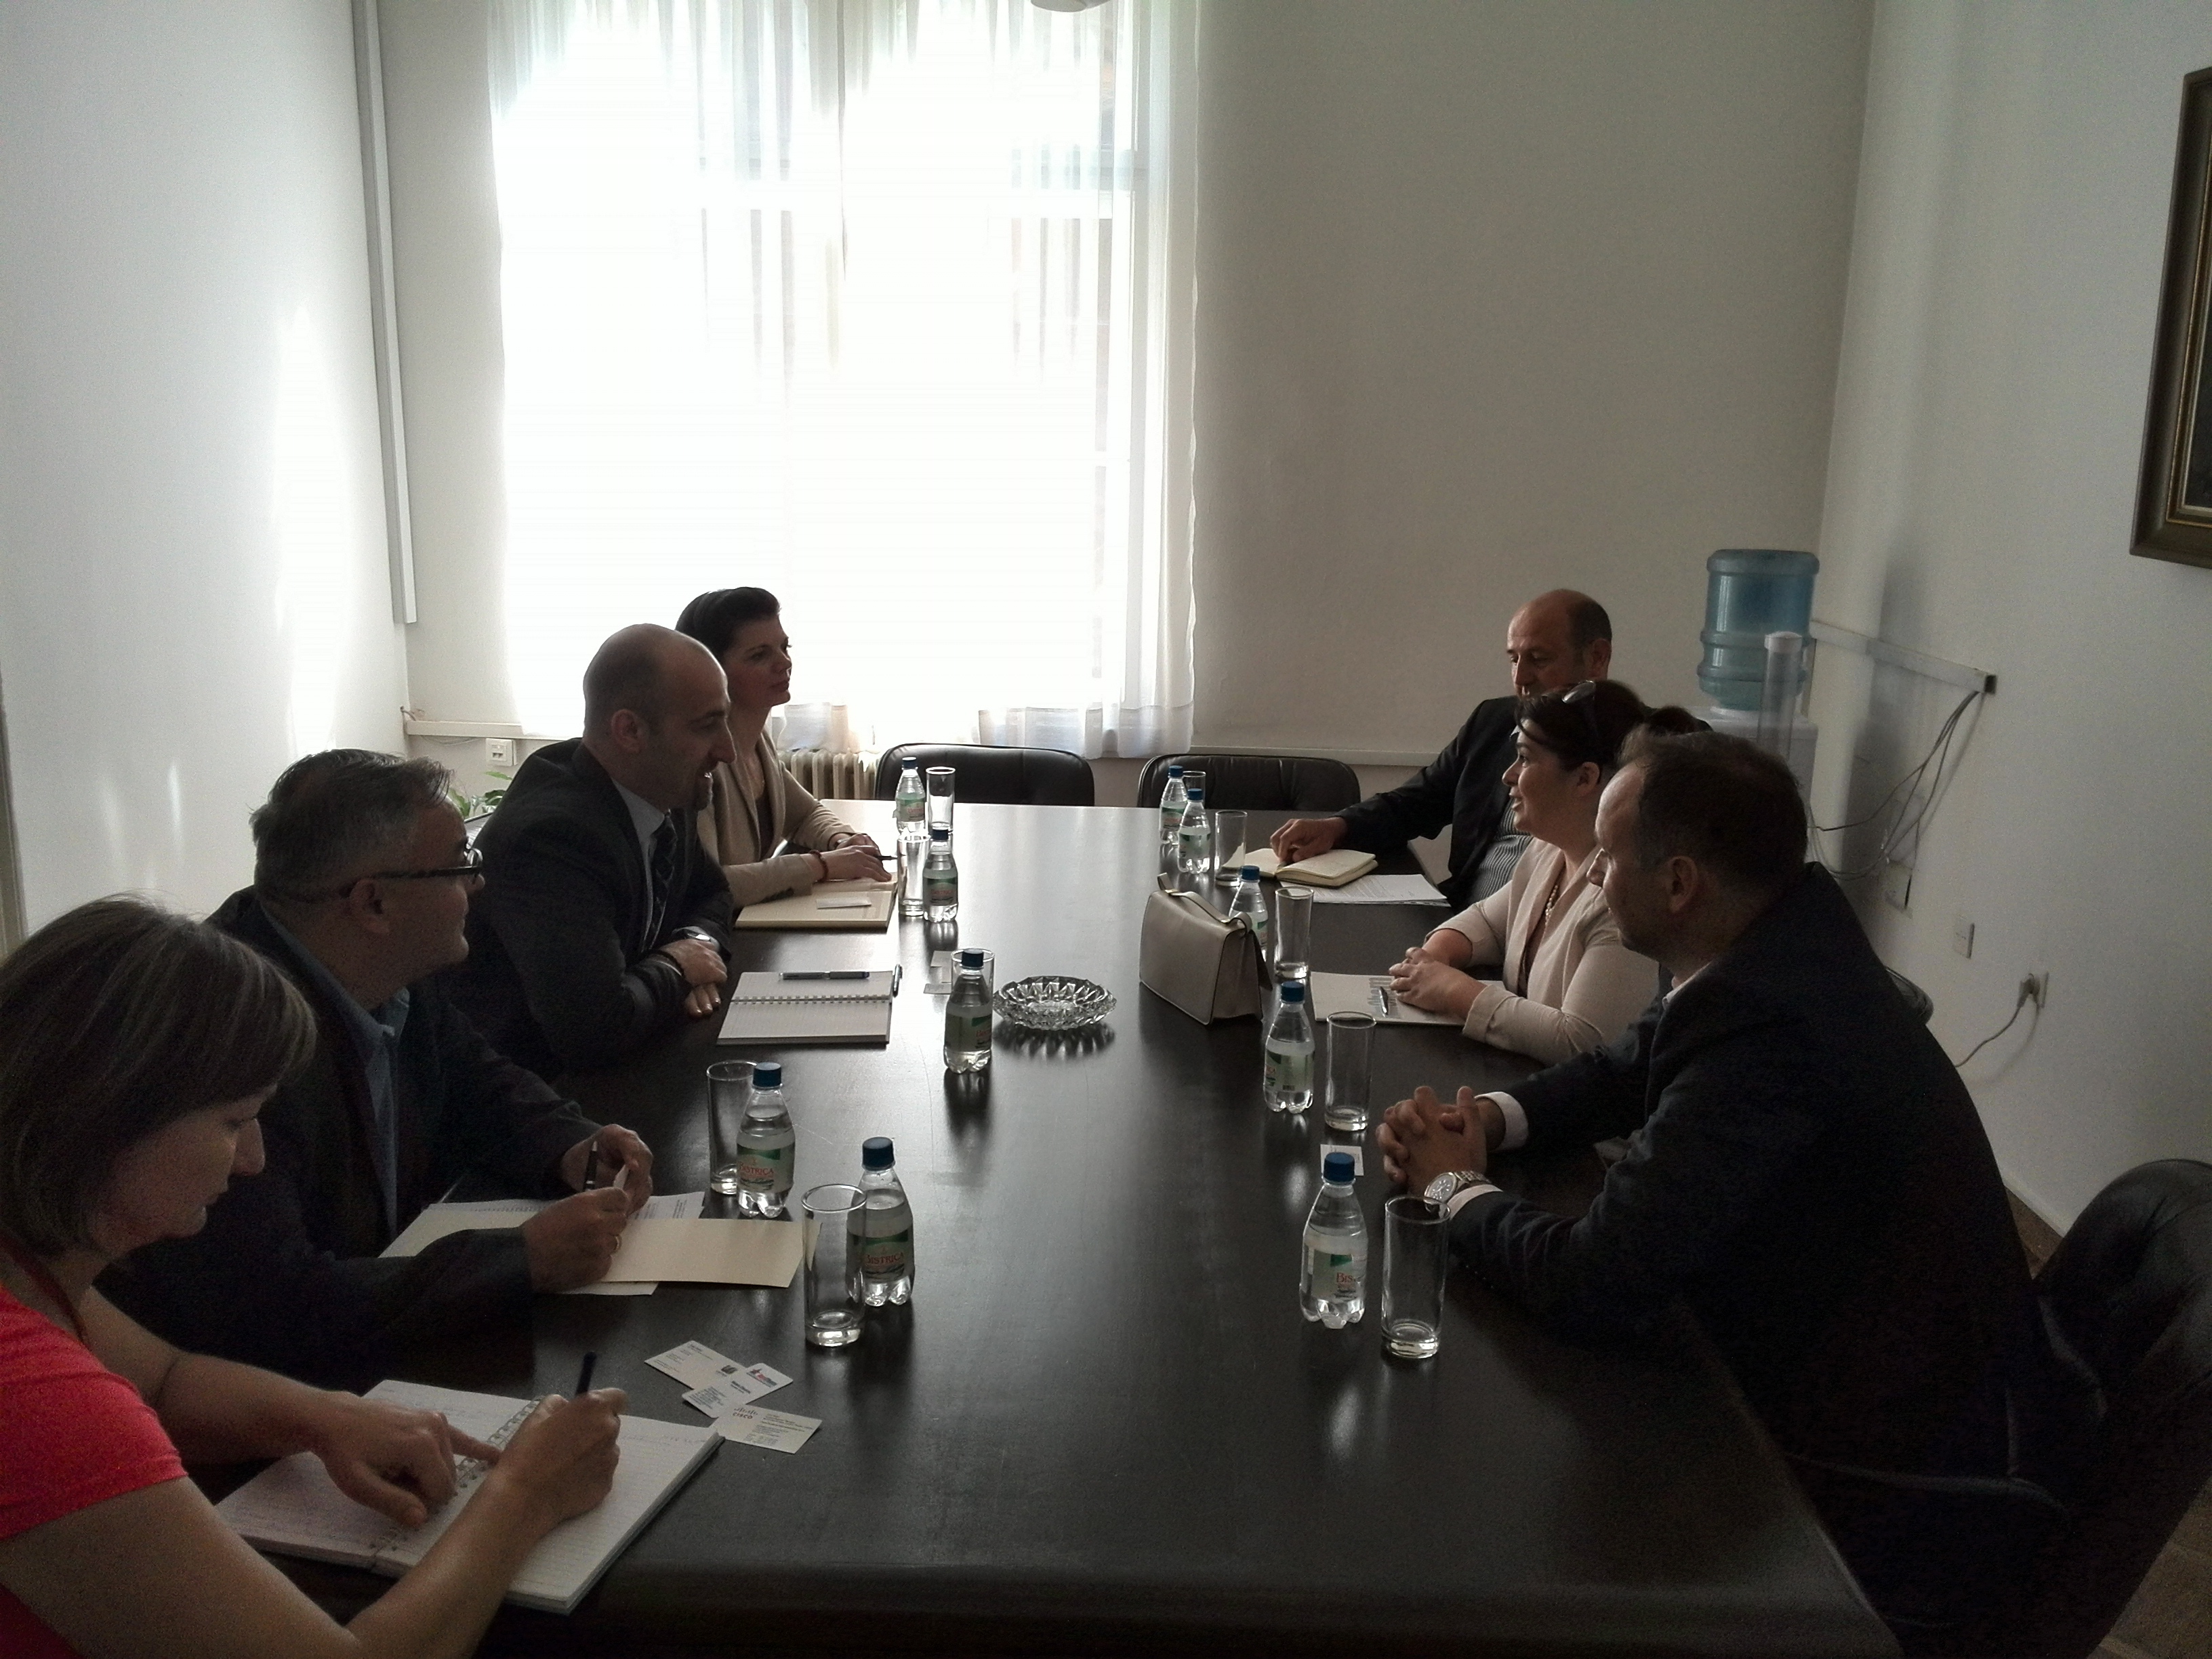 Picture for Sarajevo, 22. avgust 2014. godine -  Ministar vanjske trgovine i ekonomskih odnosa BiH mr. Boris Tučić sastao se danas u svom uredu s predstavnicima Američke privredne komore, kompanije CISCO Systems i CEO Telemach BH.